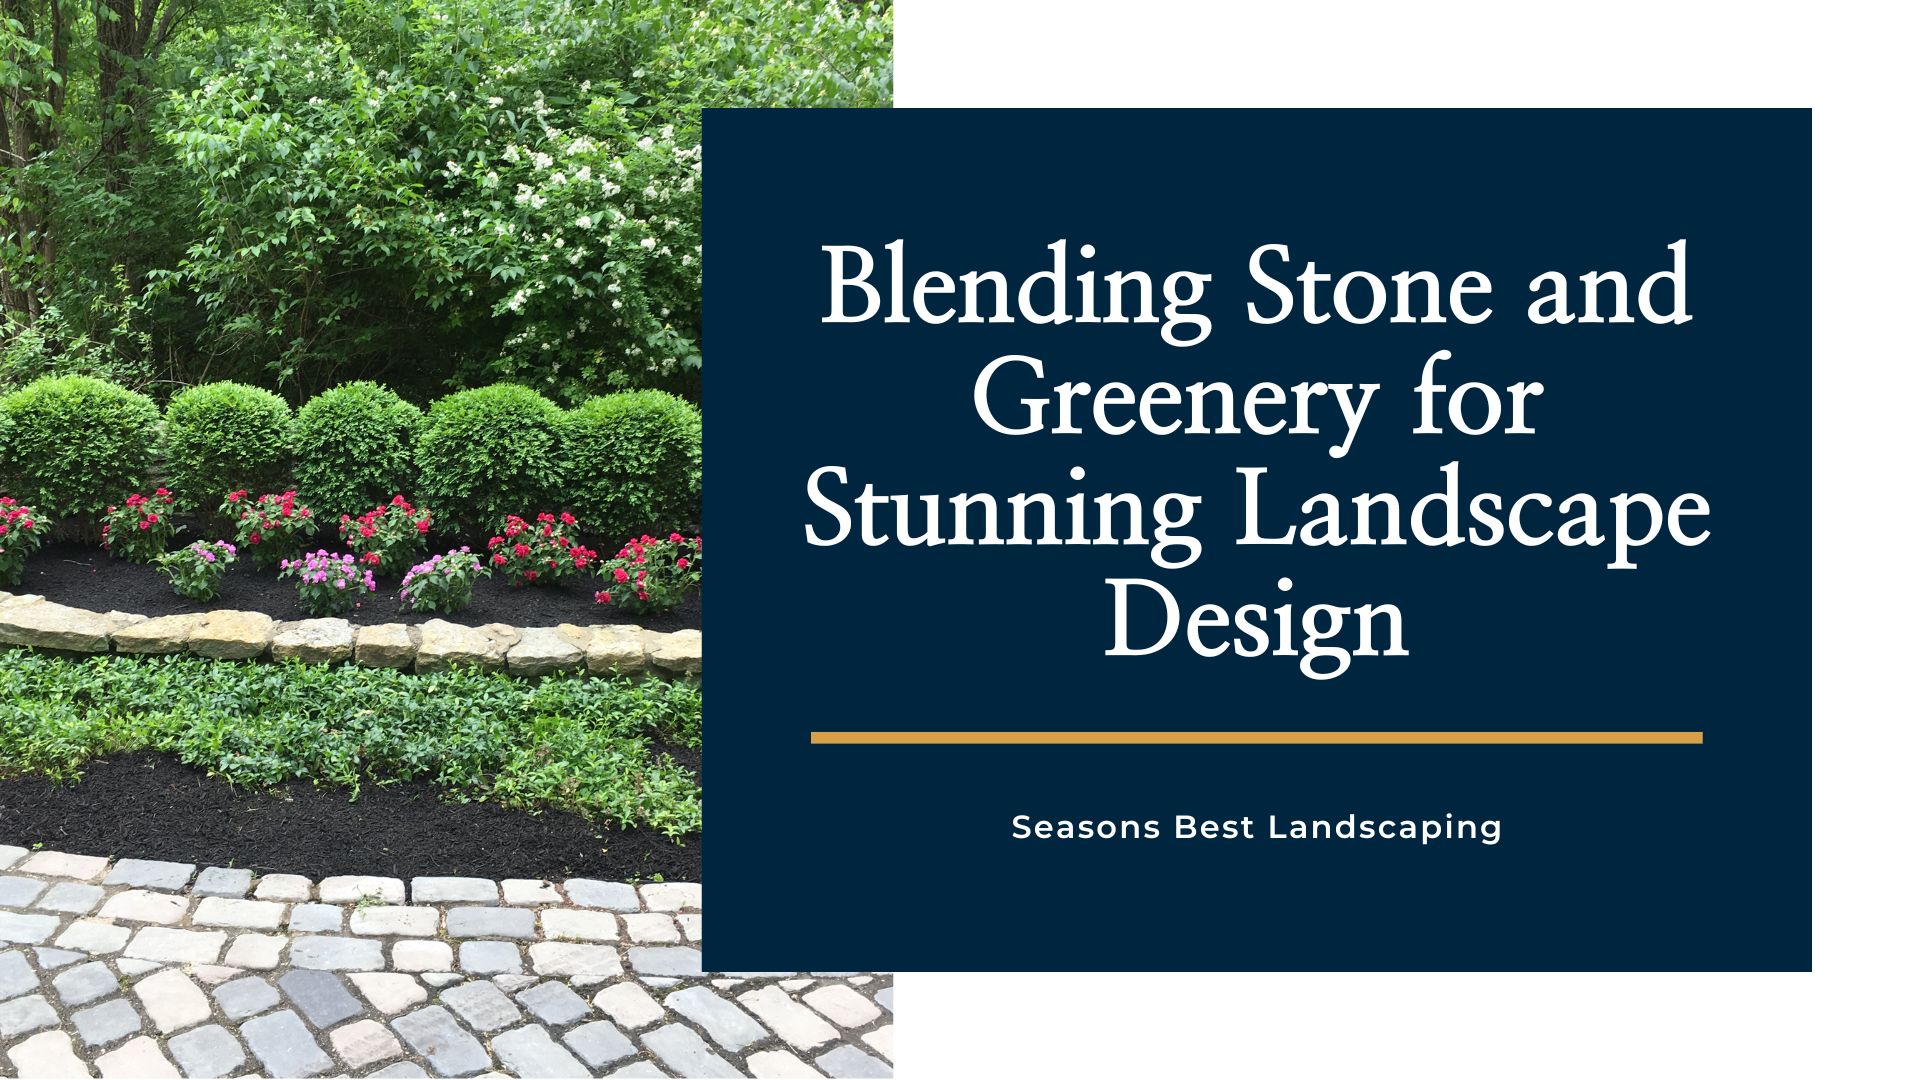 Blending Hardscape and Greenery Integration for Stunning Landscape Design